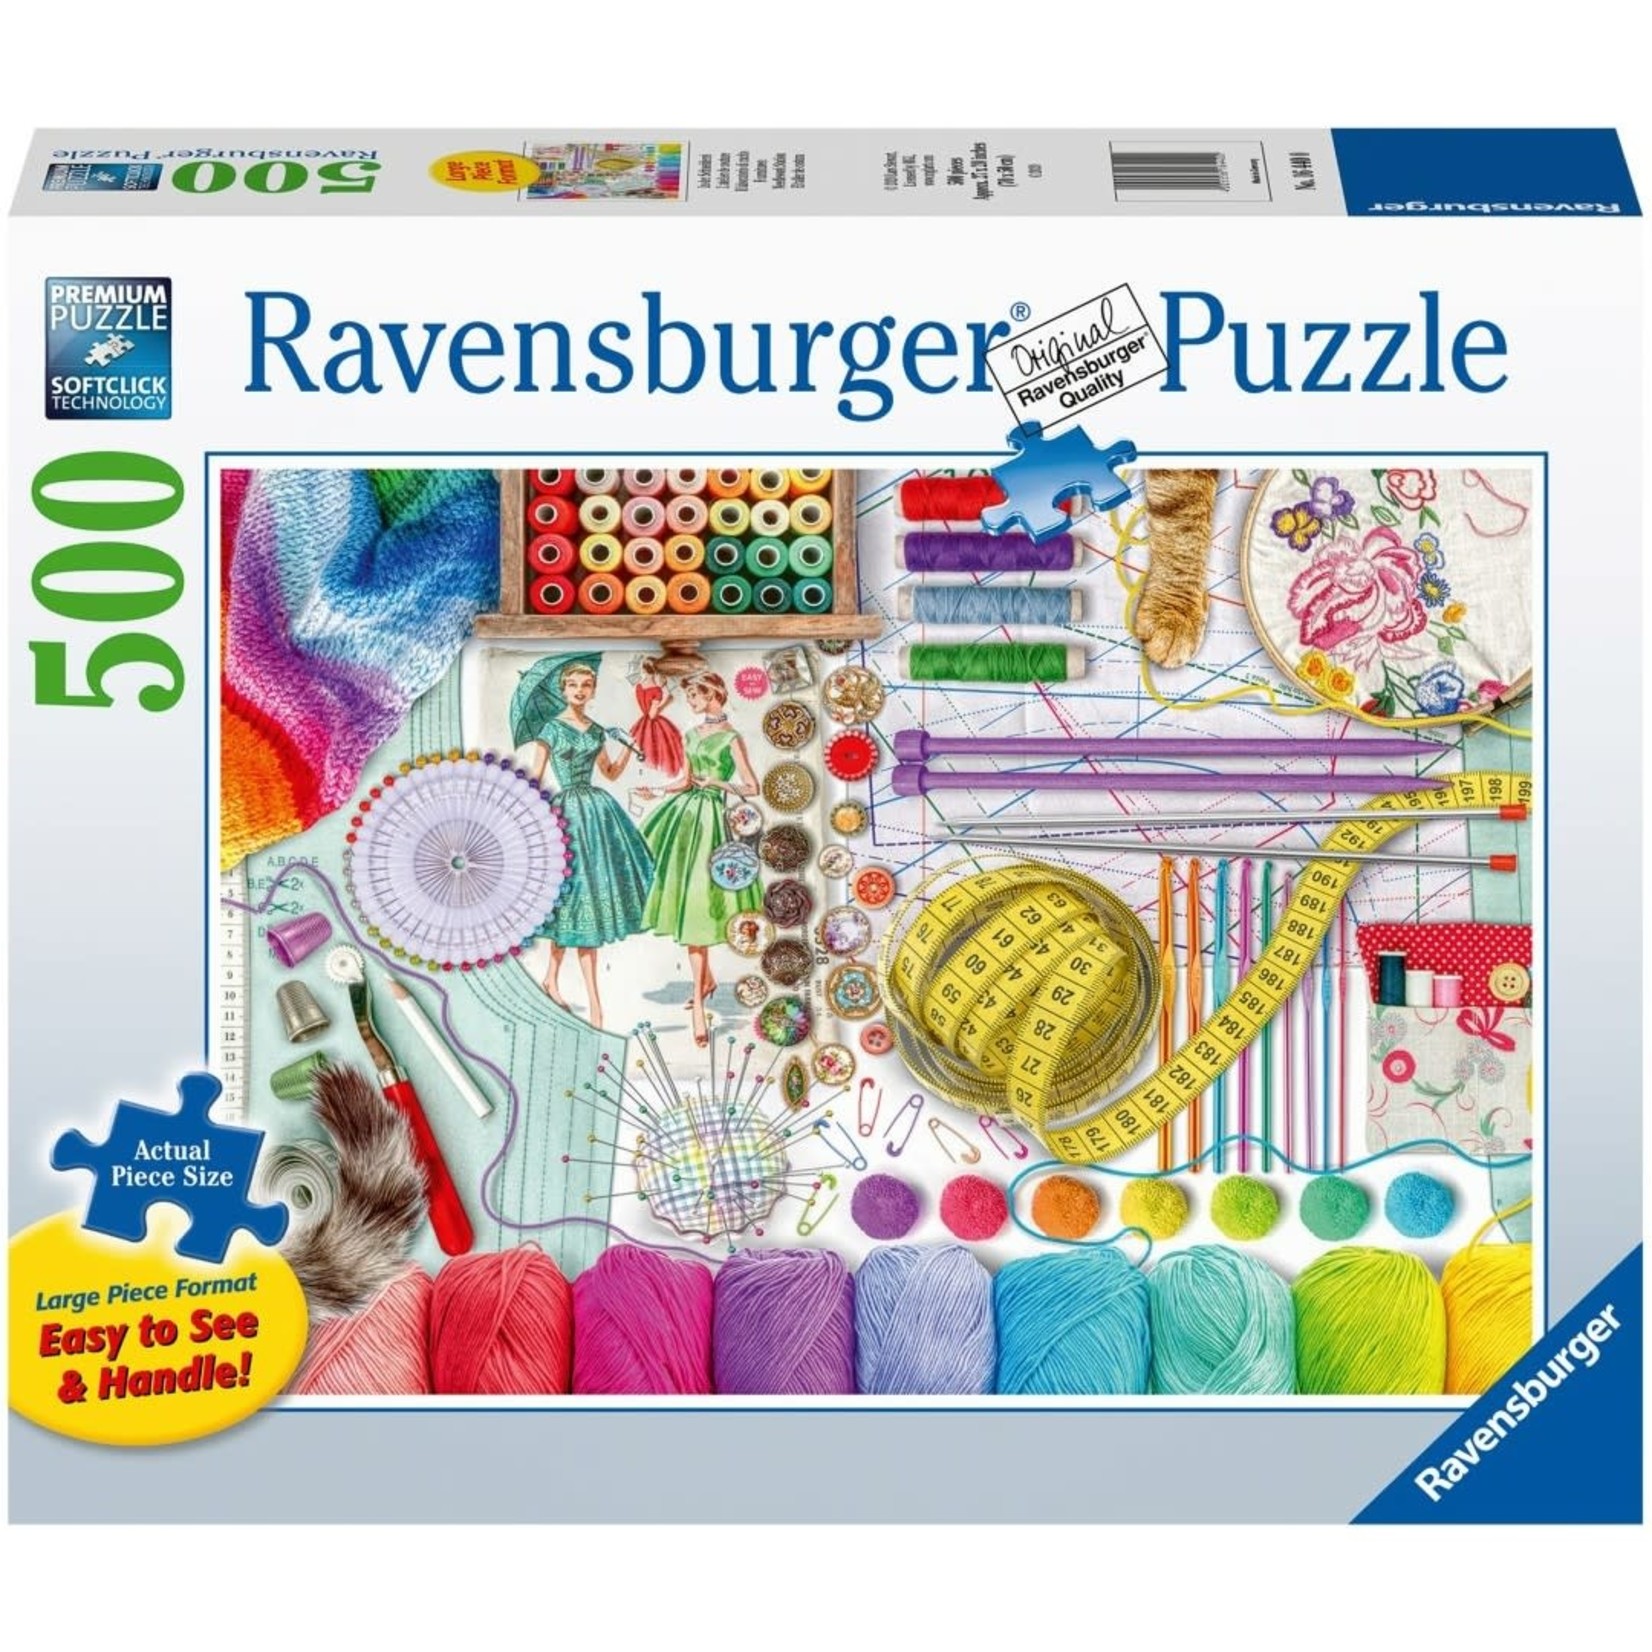 Ravensburger 500 LG pc Puzzle Needlework Station